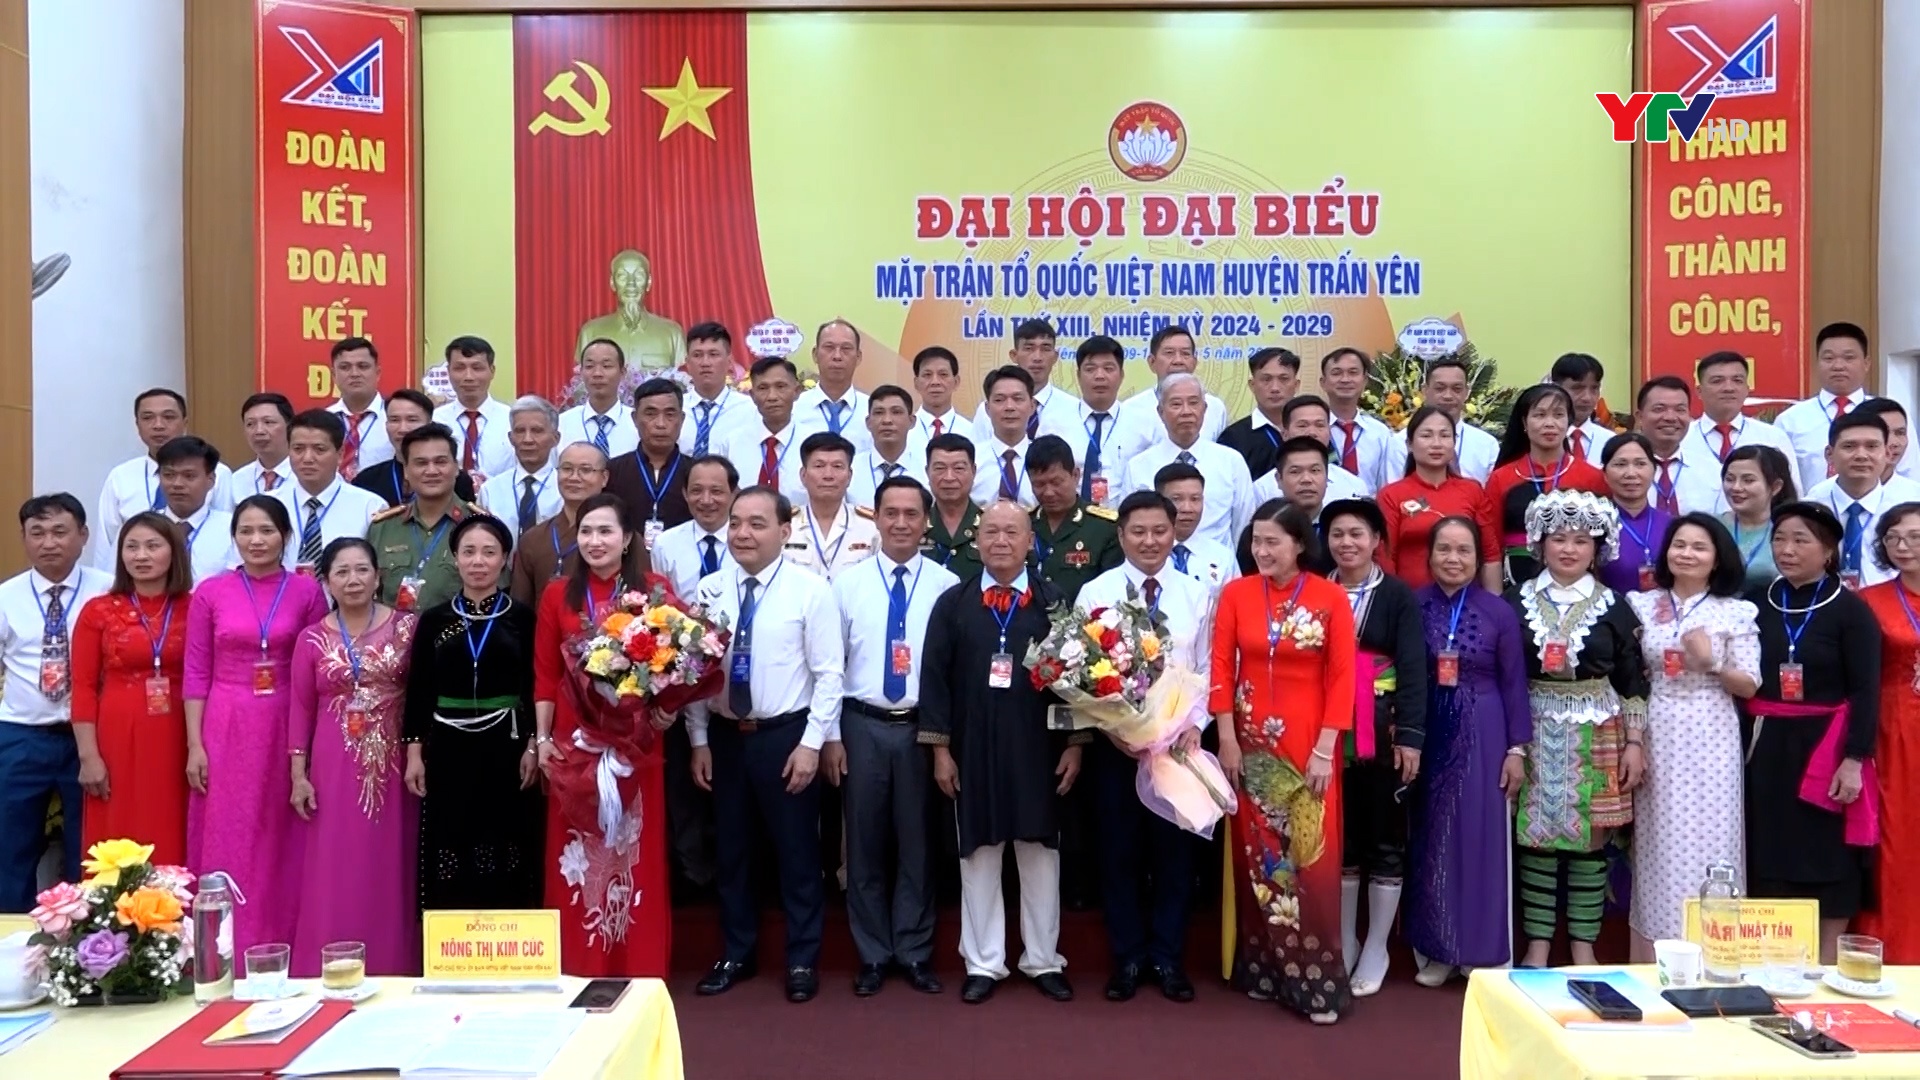 Đại hội đại biểu MTTQ huyện Trấn Yên lần thứ XIII, nhiệm kỳ 2024-2029